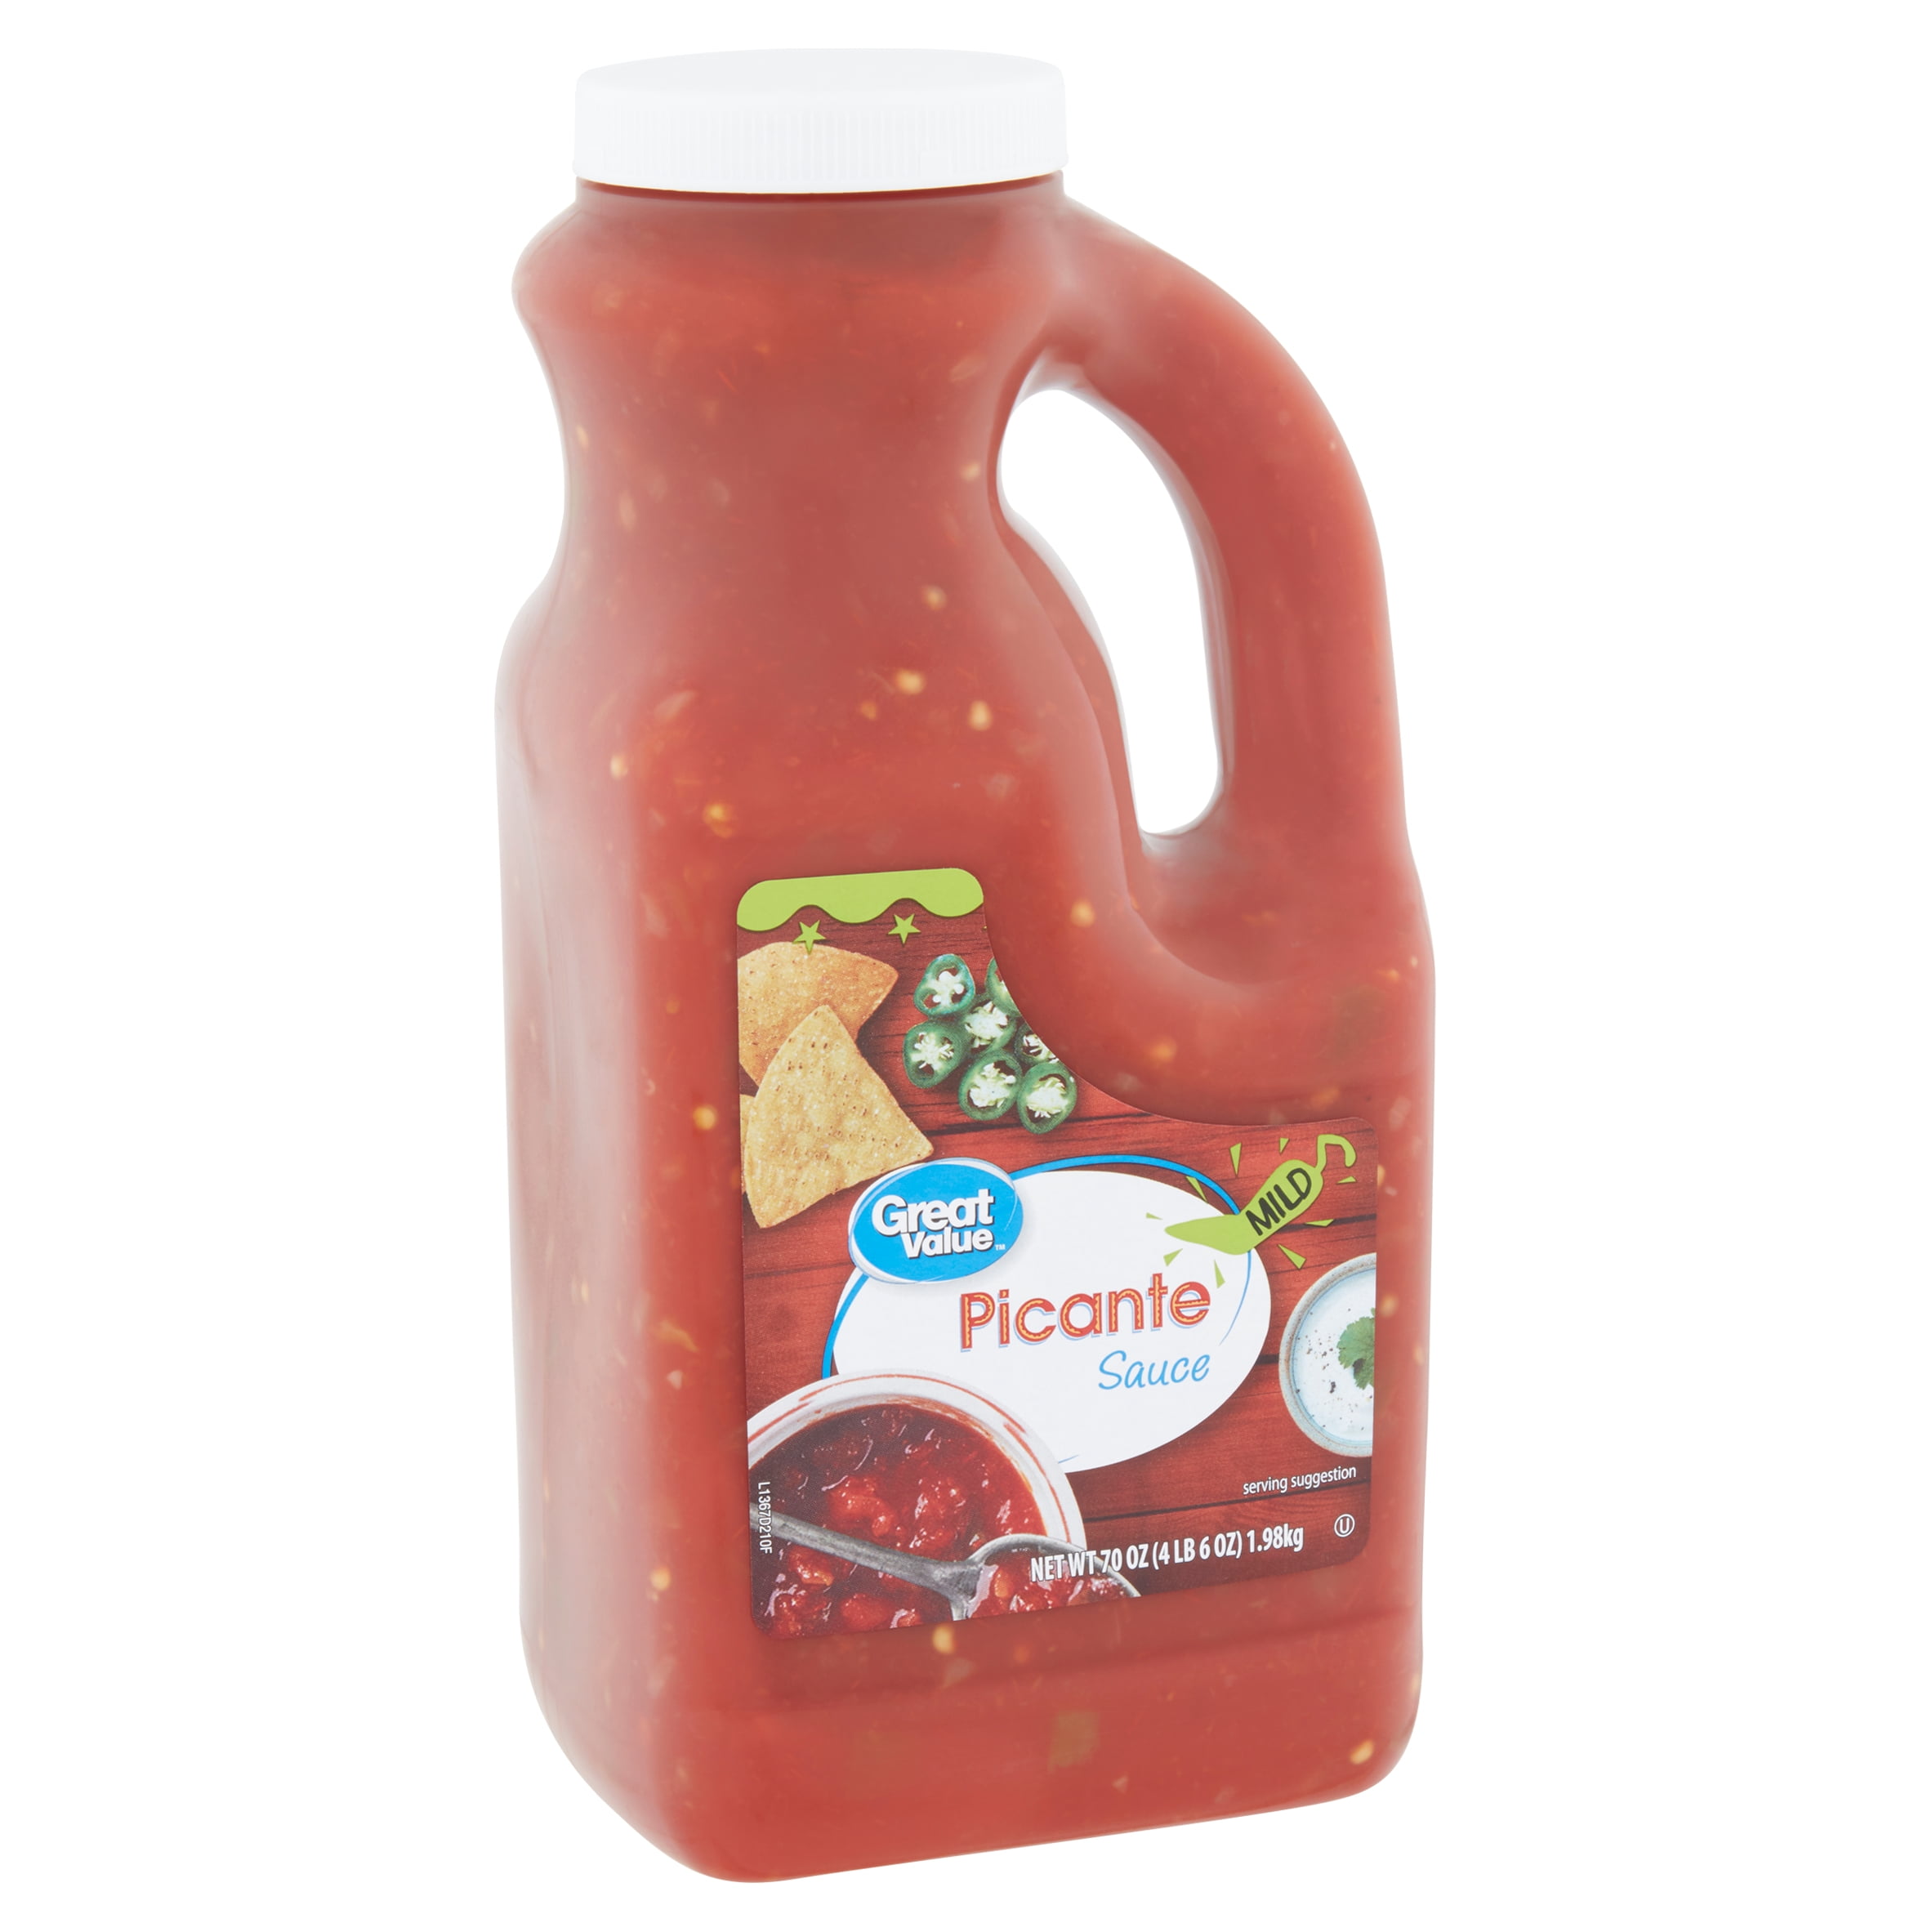 Great Value Picante Sauce, Mild, 70 oz - Walmart.com - Walmart.com